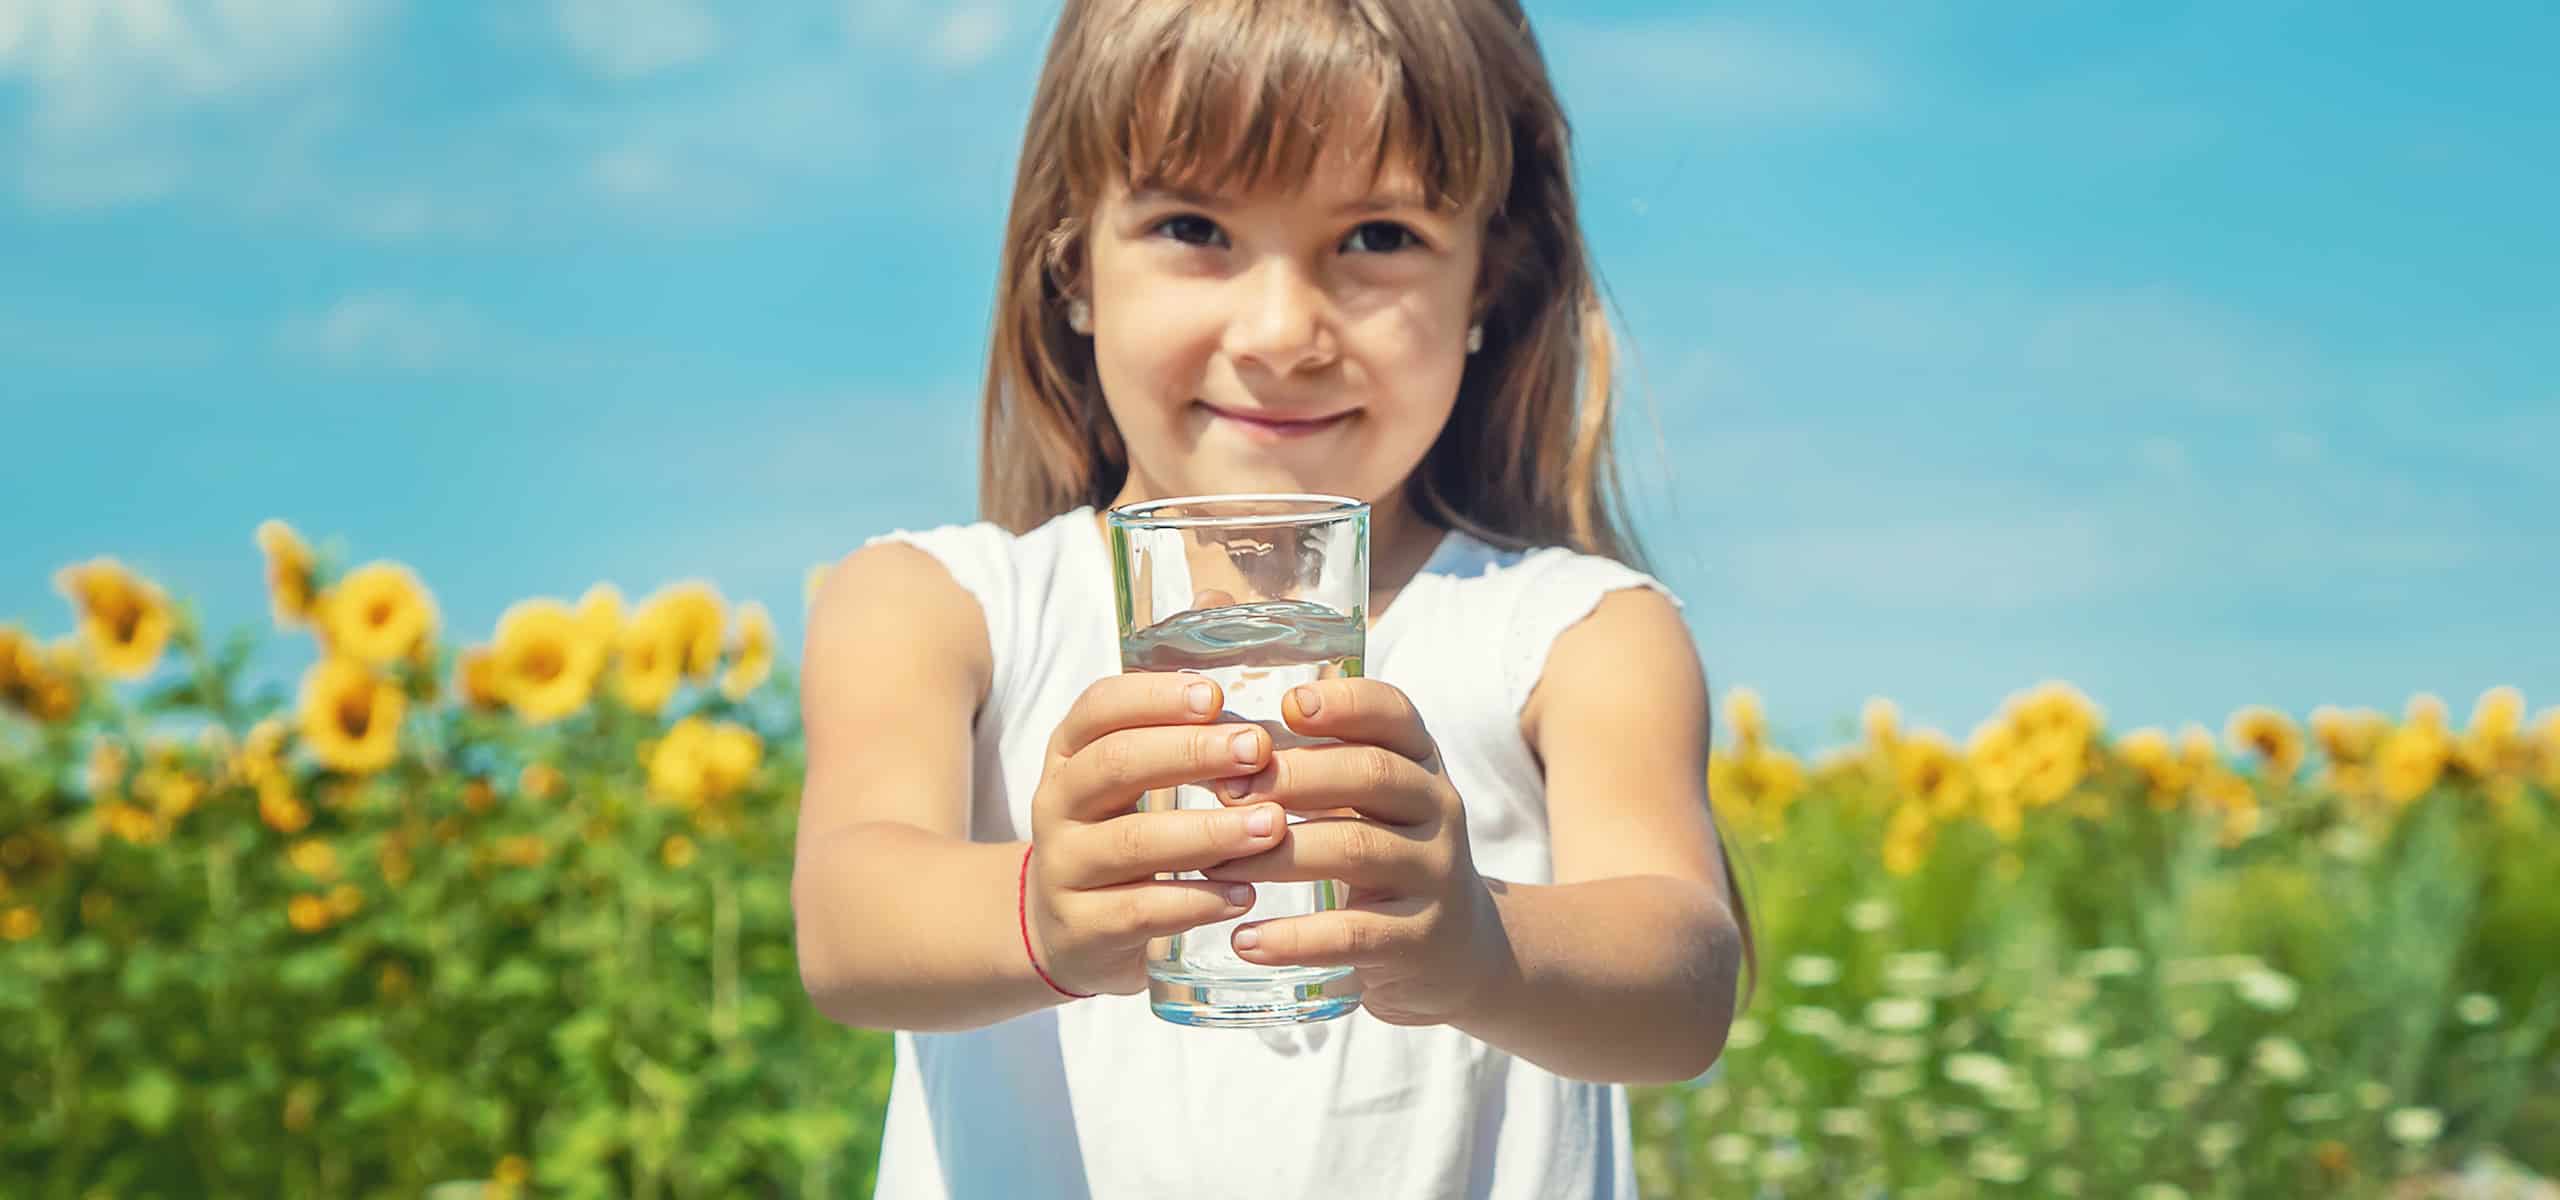 Mädchen hällt ein Glas mit Wasser in Händen